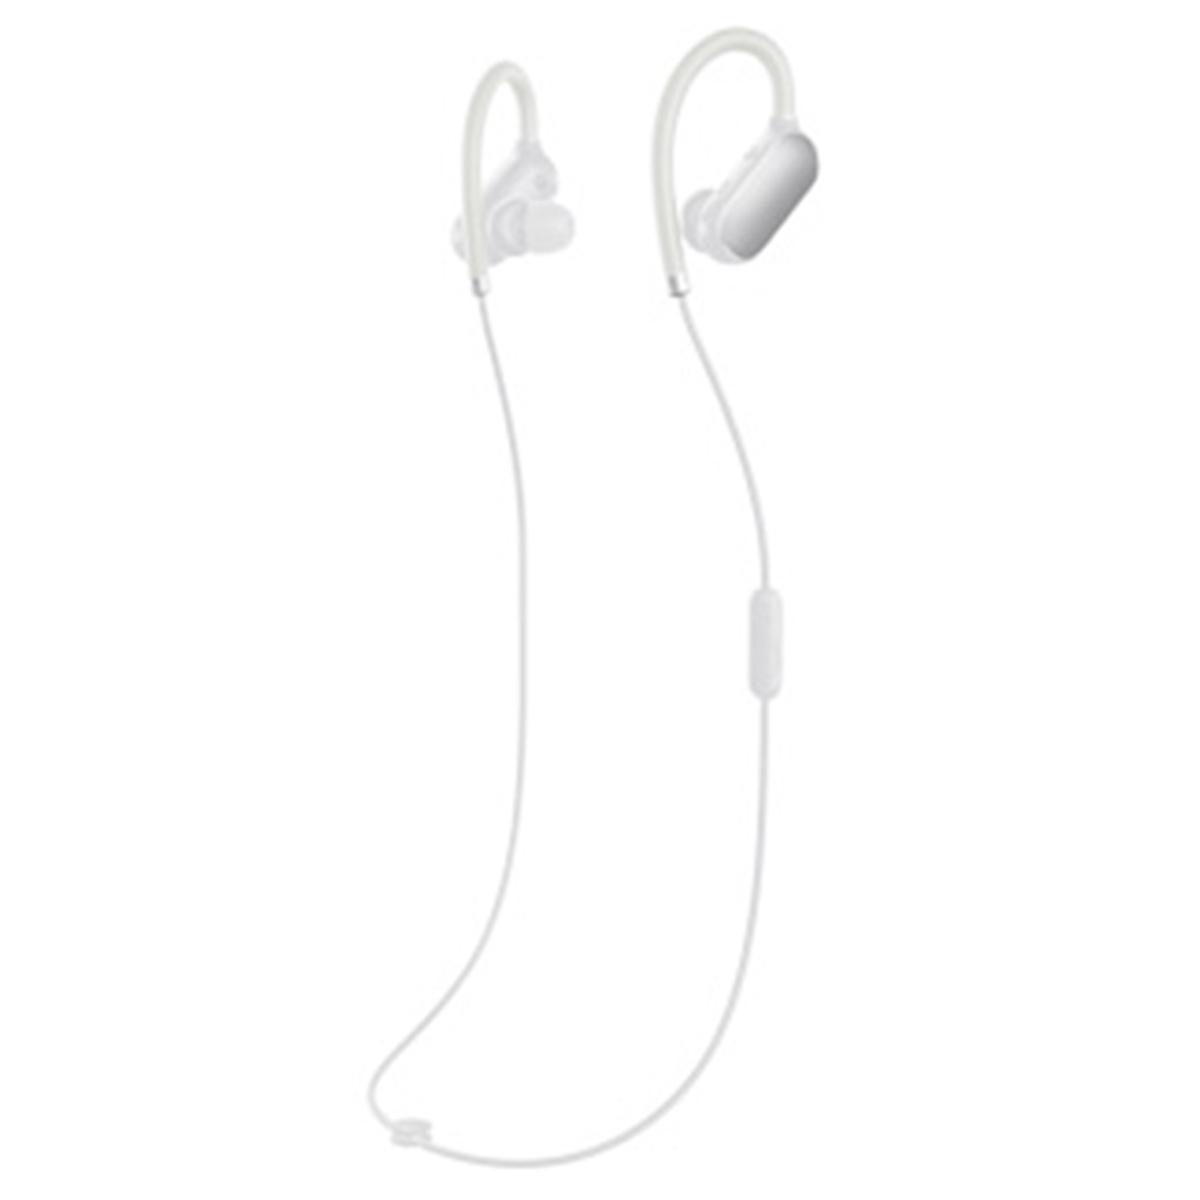 ยี่ห้อนี้ดีไหม  นราธิวาส Xiaomi Sports Bluetooth V4.1 หูฟังชนิดใส่ในหู-สีขาว